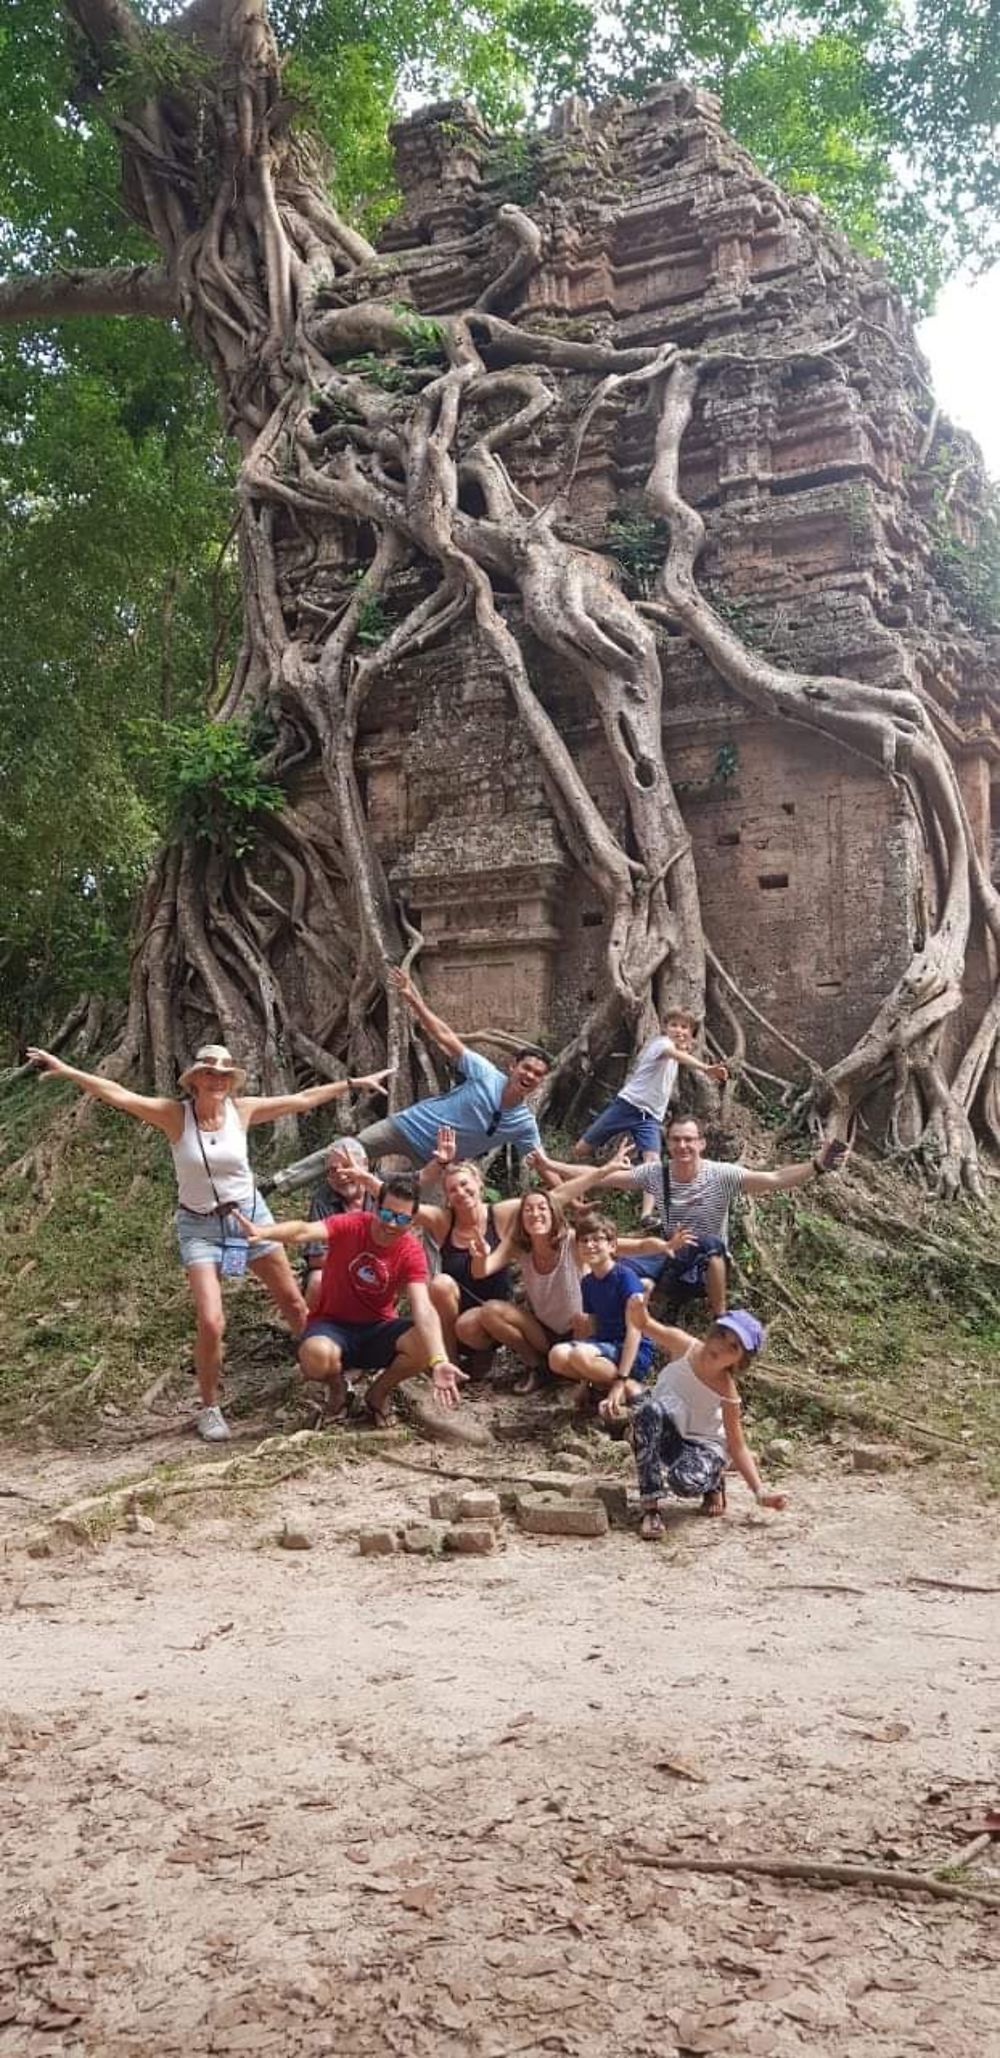 Re: Excellent guide à Siemp Reap (temple d’Angkor) et possibilités sur tout le Cambodge - Doth